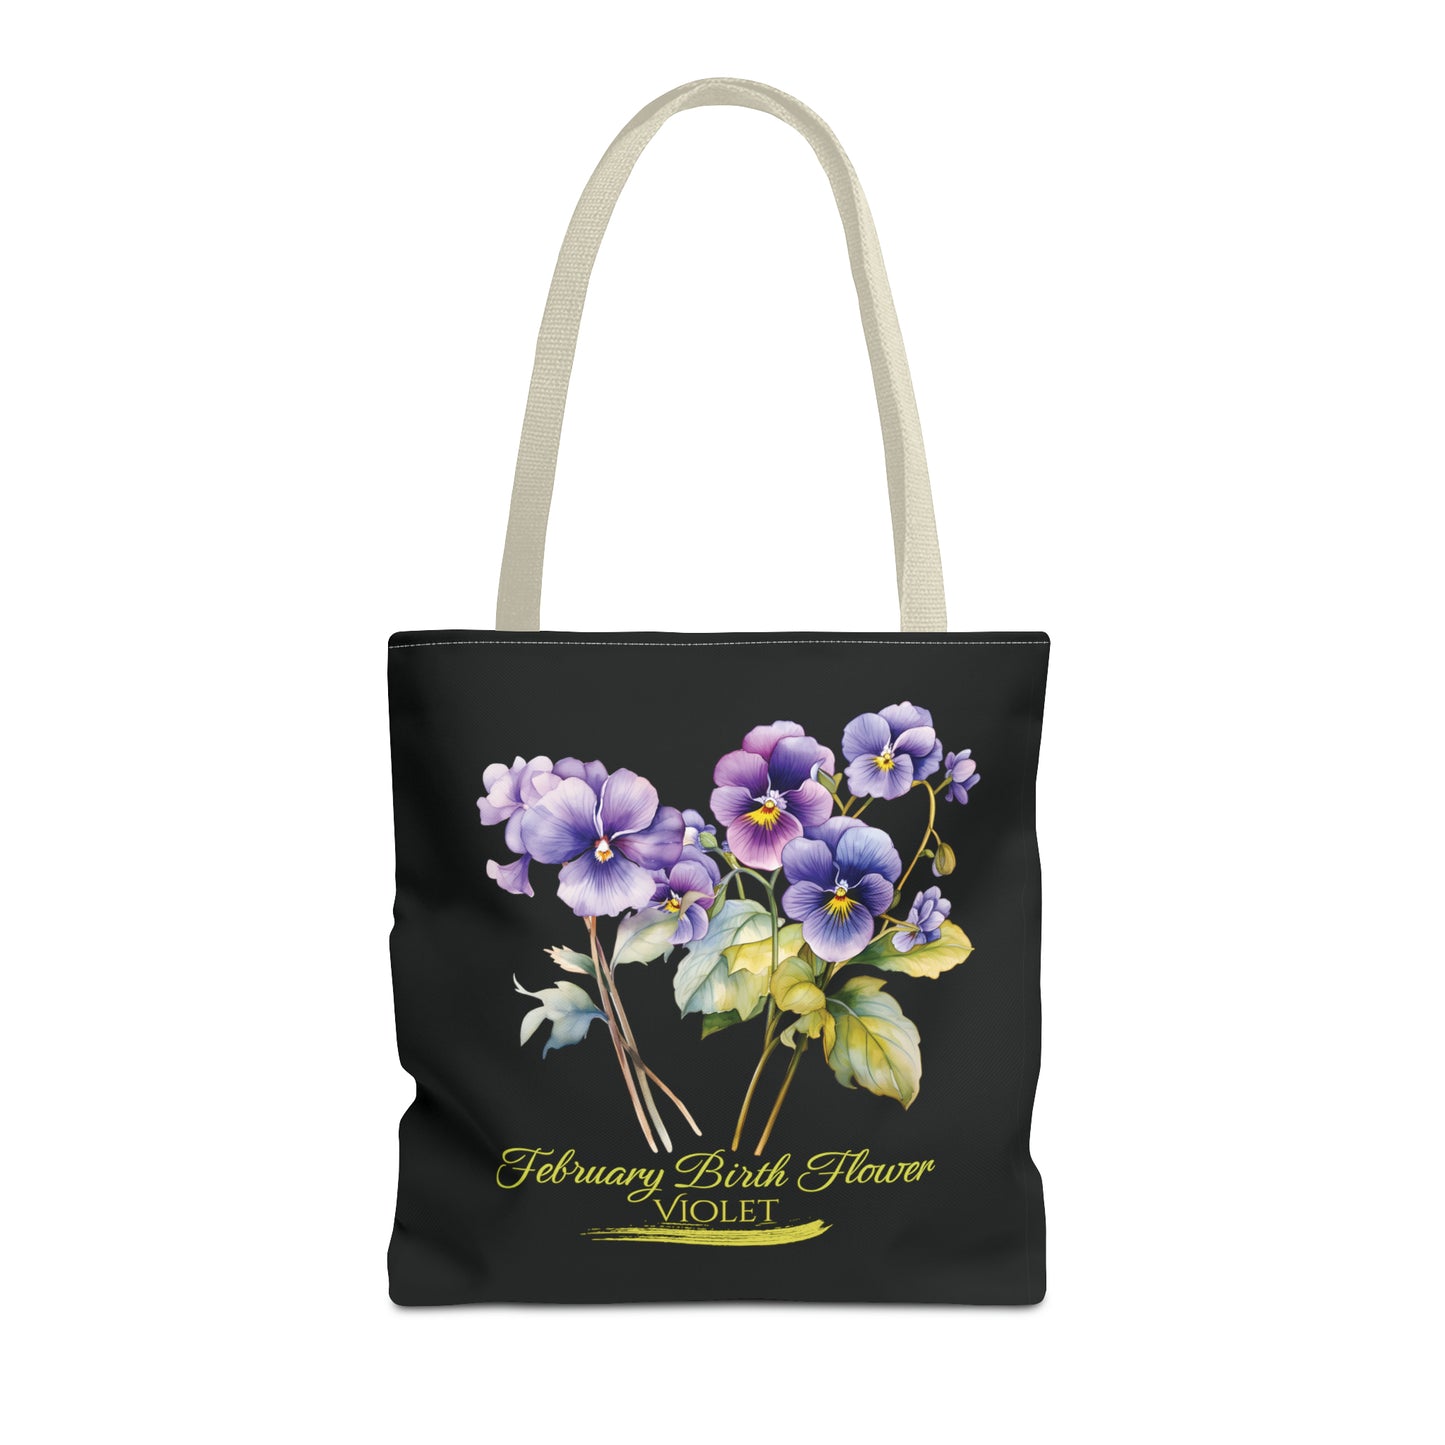 February Birth Flower: Violet - Tote Bag (AOP)